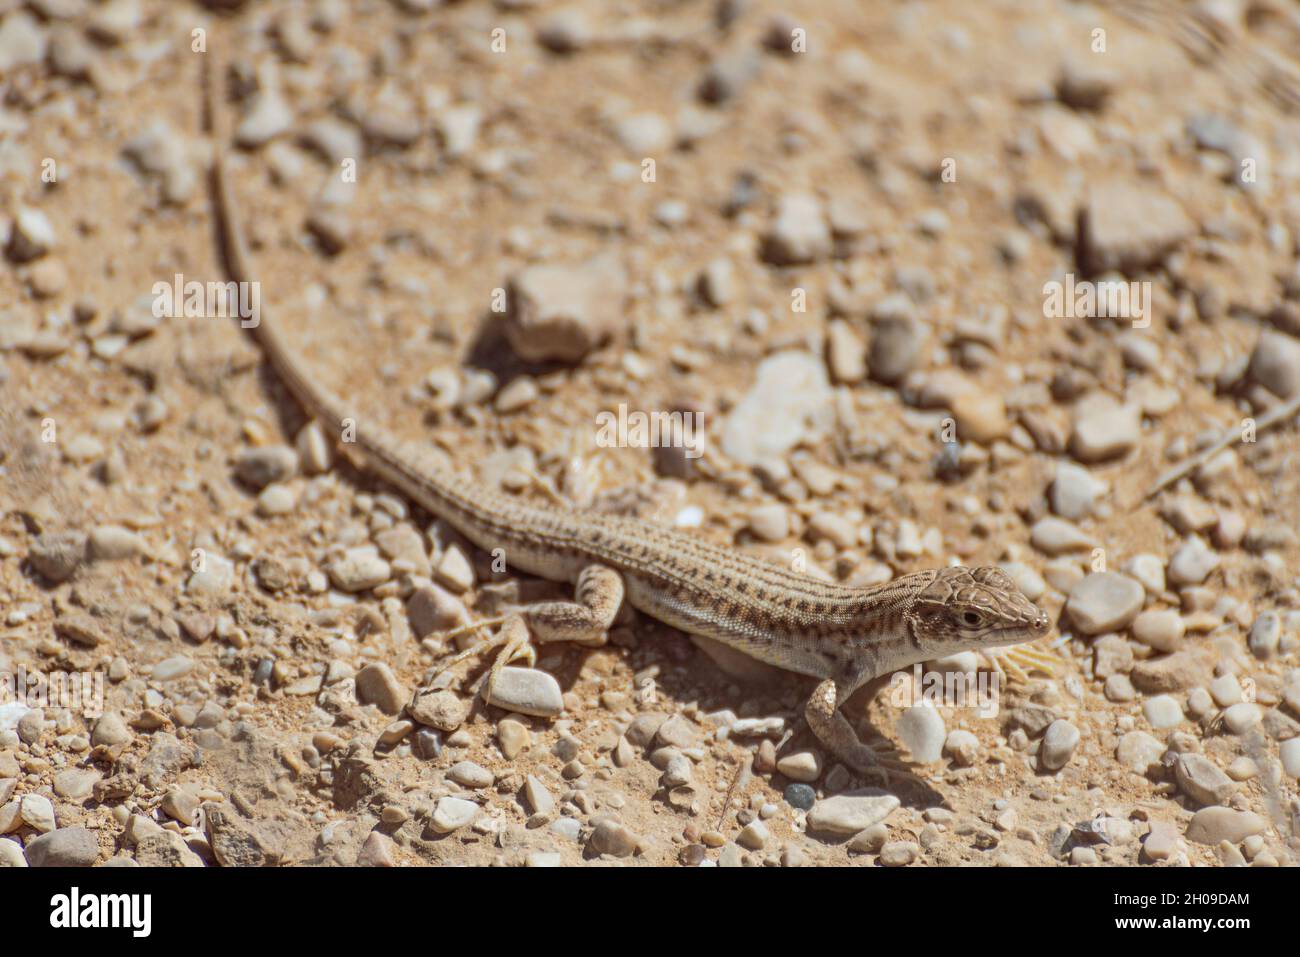 Un primo piano di una piccola lucertola si trova sotto una roccia calda sotto il sole estivo. Il deserto del Negev, Israele. Foto di alta qualità Foto Stock